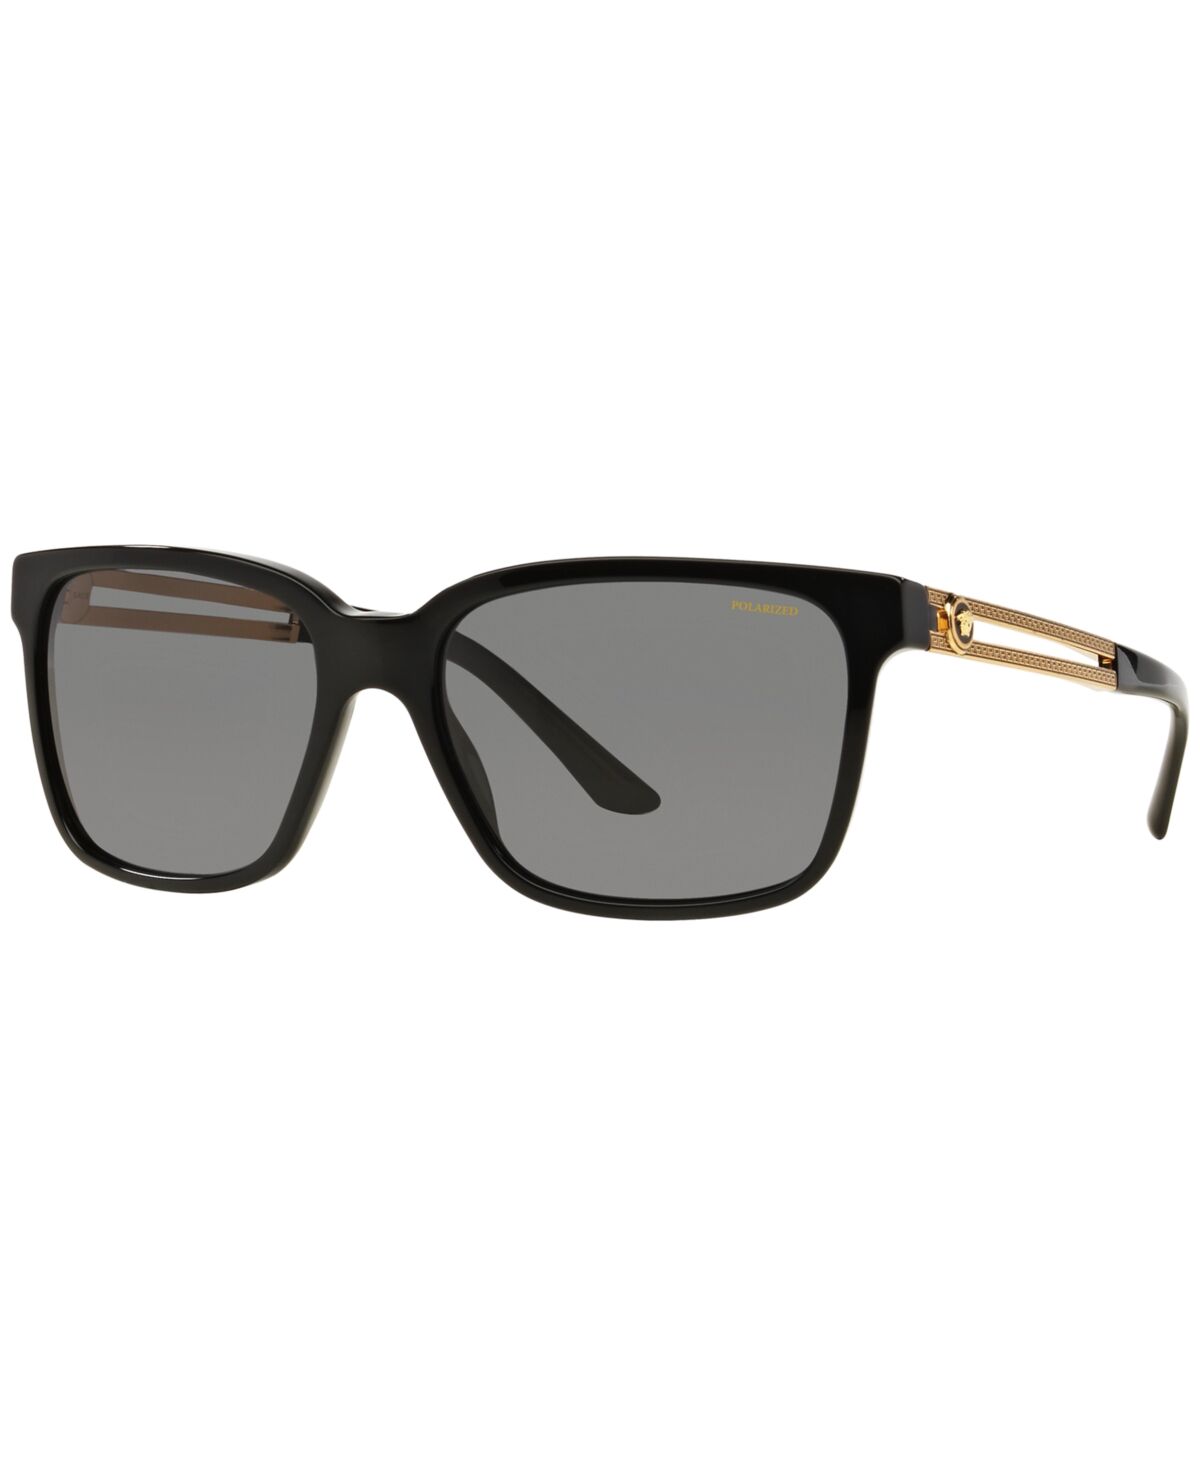 Versace Polarized Sunglasses , VE4307 - BLACK/GREY POLAR